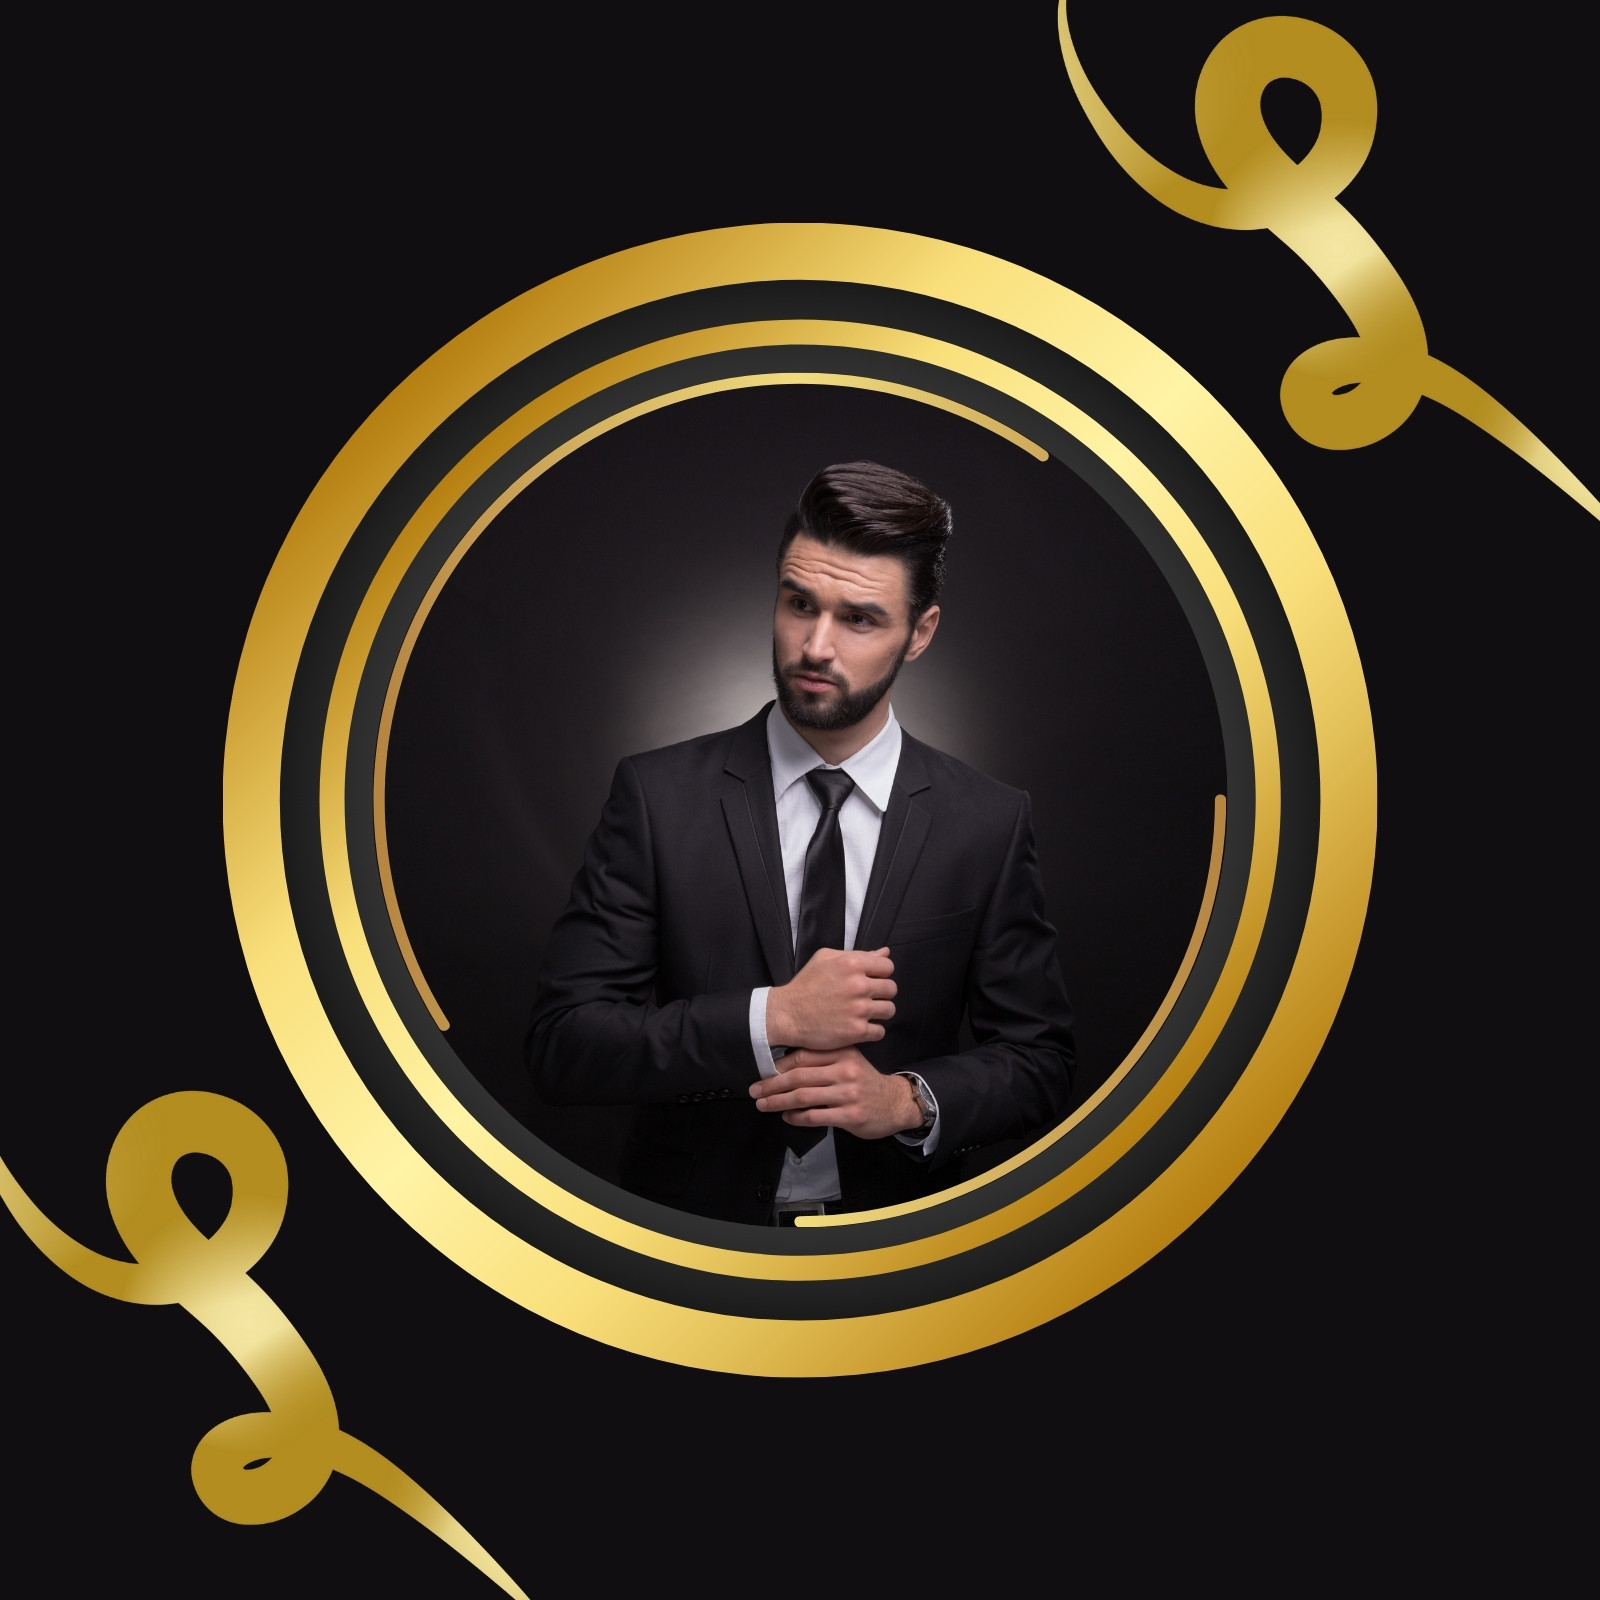 foto del perfil de instagram hombre elegante negro y dorado